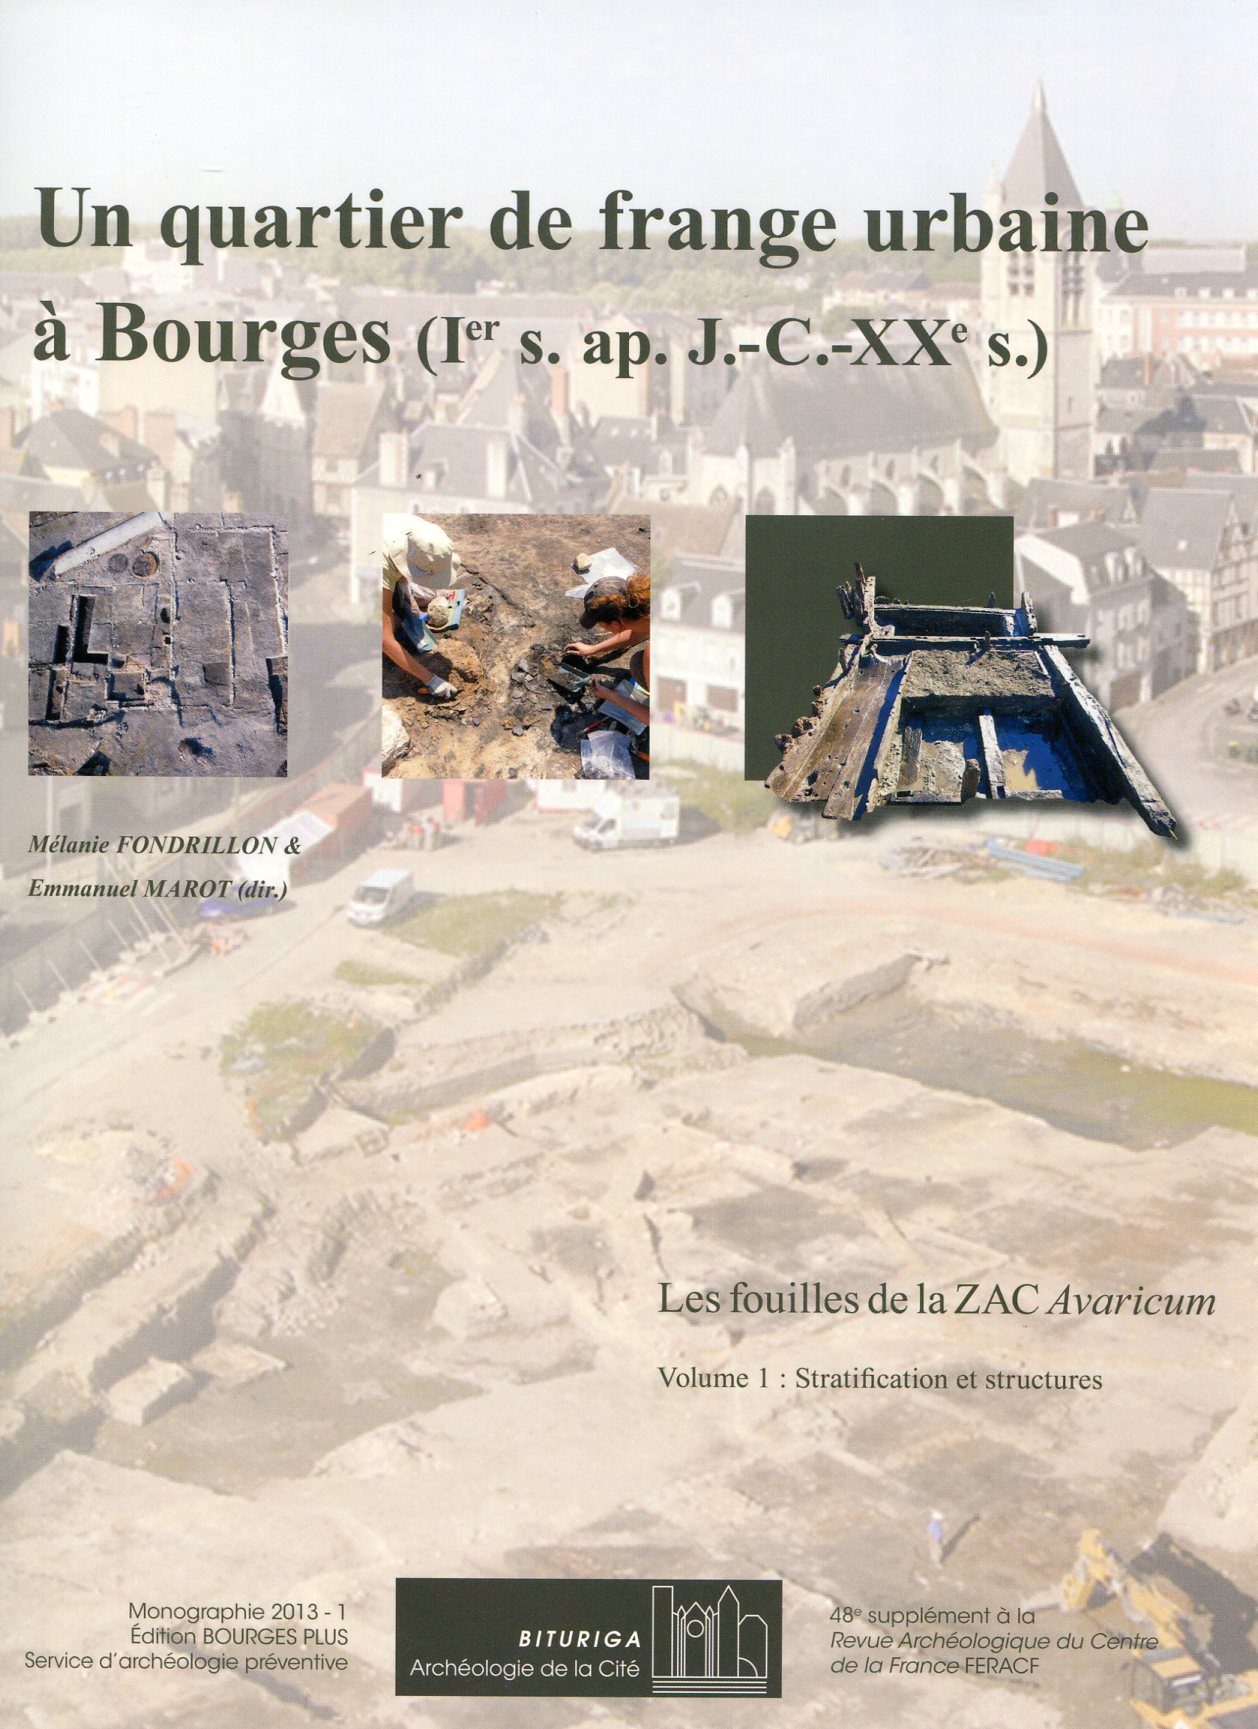 Volume 1 + Volume 2 - Un quartier de frange urbaine à Bourges (Ier s. ap. J.-C.-XXe s.). Les fouilles de la ZAC Avaricum, (48e suppl. RACF), (Bituriga Monographie 2013-1), 2013, 2 vol. (Vol. 1, Stratification et structures ; Vol. 2, Catalogue des mobiliers).